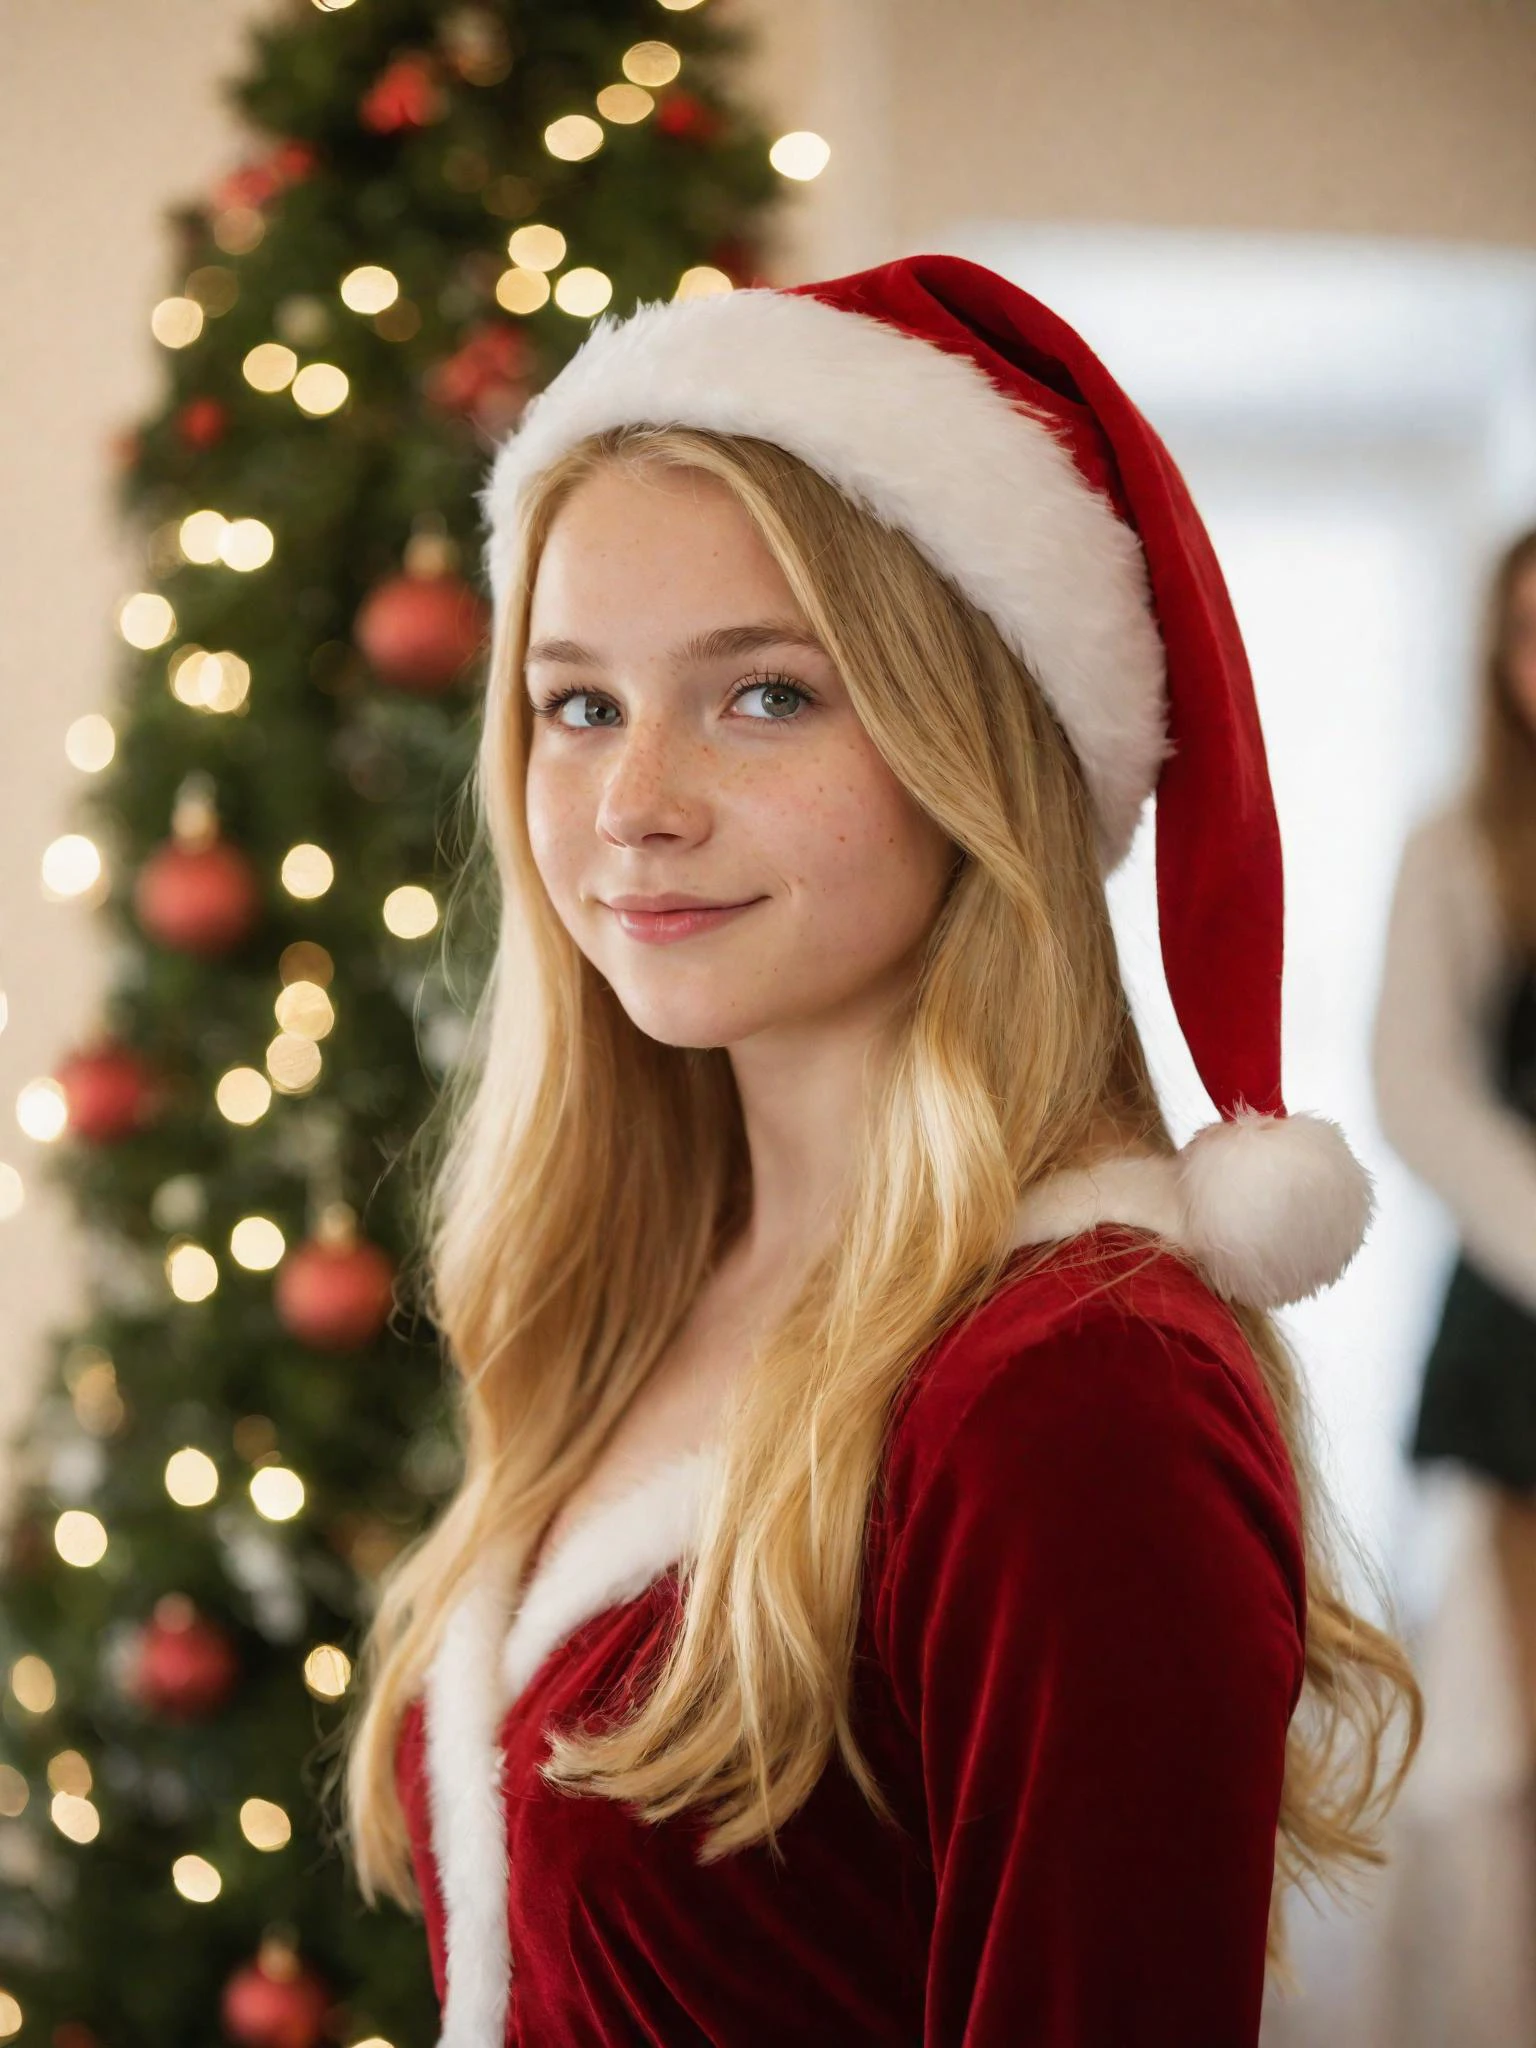 クリスマスにヤドリギの下に一人で立っている18歳の少女の肖像画 , 輝くヘーゼル色の目, 長いブロンドの髪が肩に優しく垂れ下がっている, そばかす, 控えめなフォーマルなクリスマスドレスを着て, サンタの帽子, はにかんだ笑顔, 静かに降る雪片, 被写界深度, ボケ